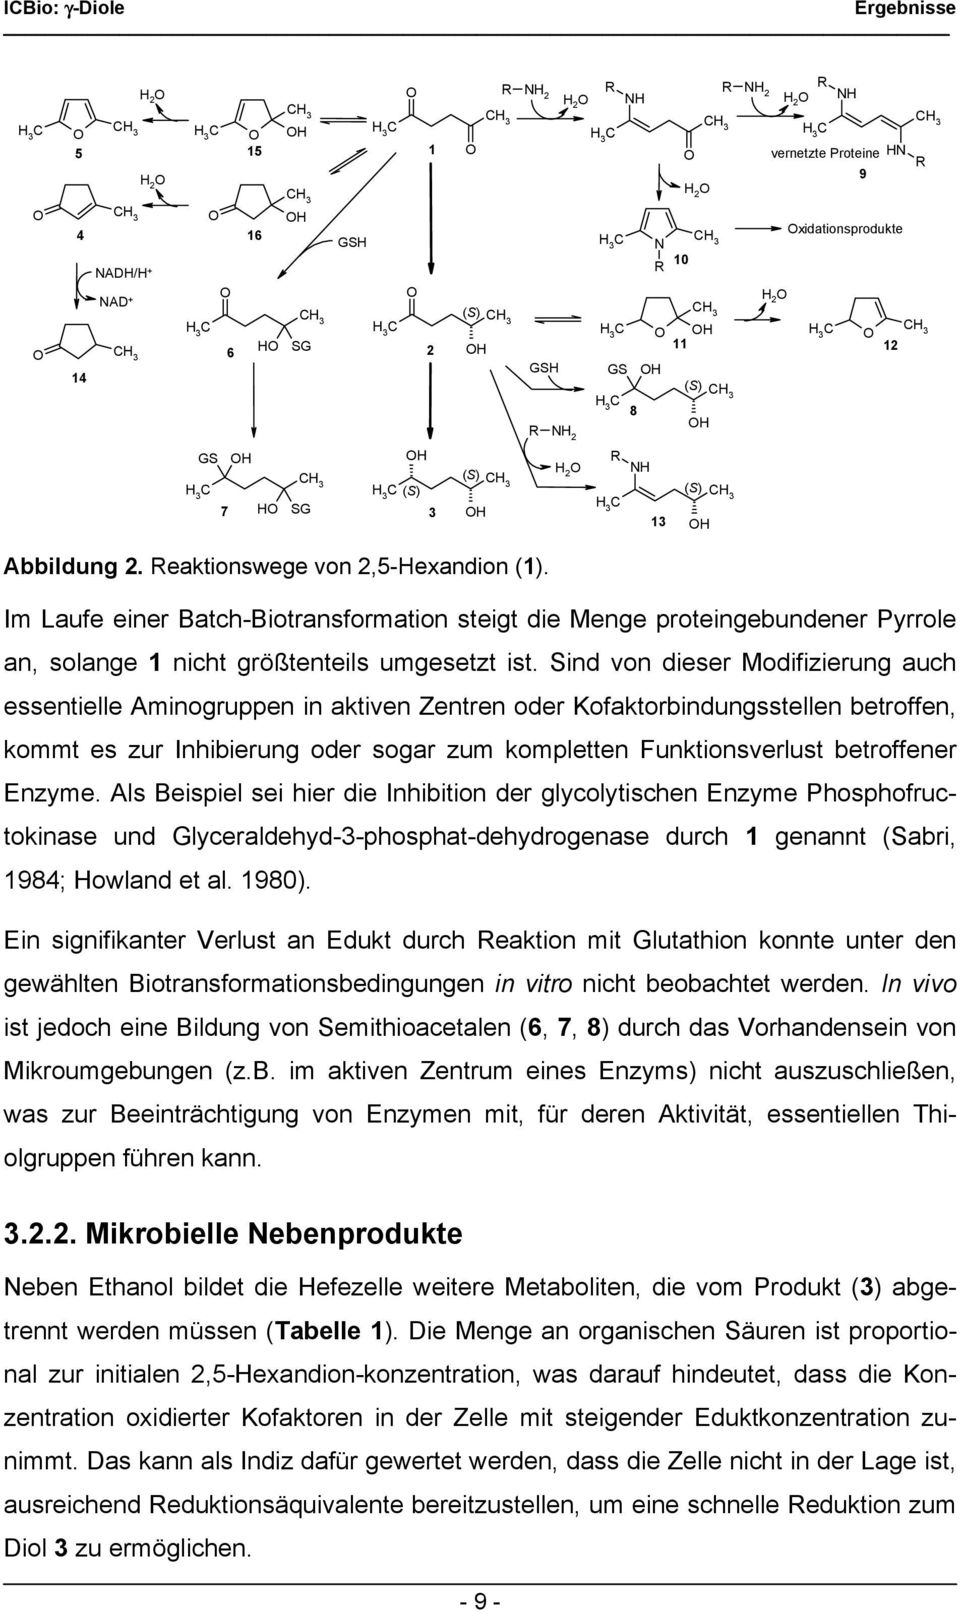 xidationsprodukte Abbildung 2. Reaktionswege von 2,5-Hexandion (1). Im Laufe einer Batch-Biotransformation steigt die Menge proteingebundener Pyrrole an, solange 1 nicht größtenteils umgesetzt ist.